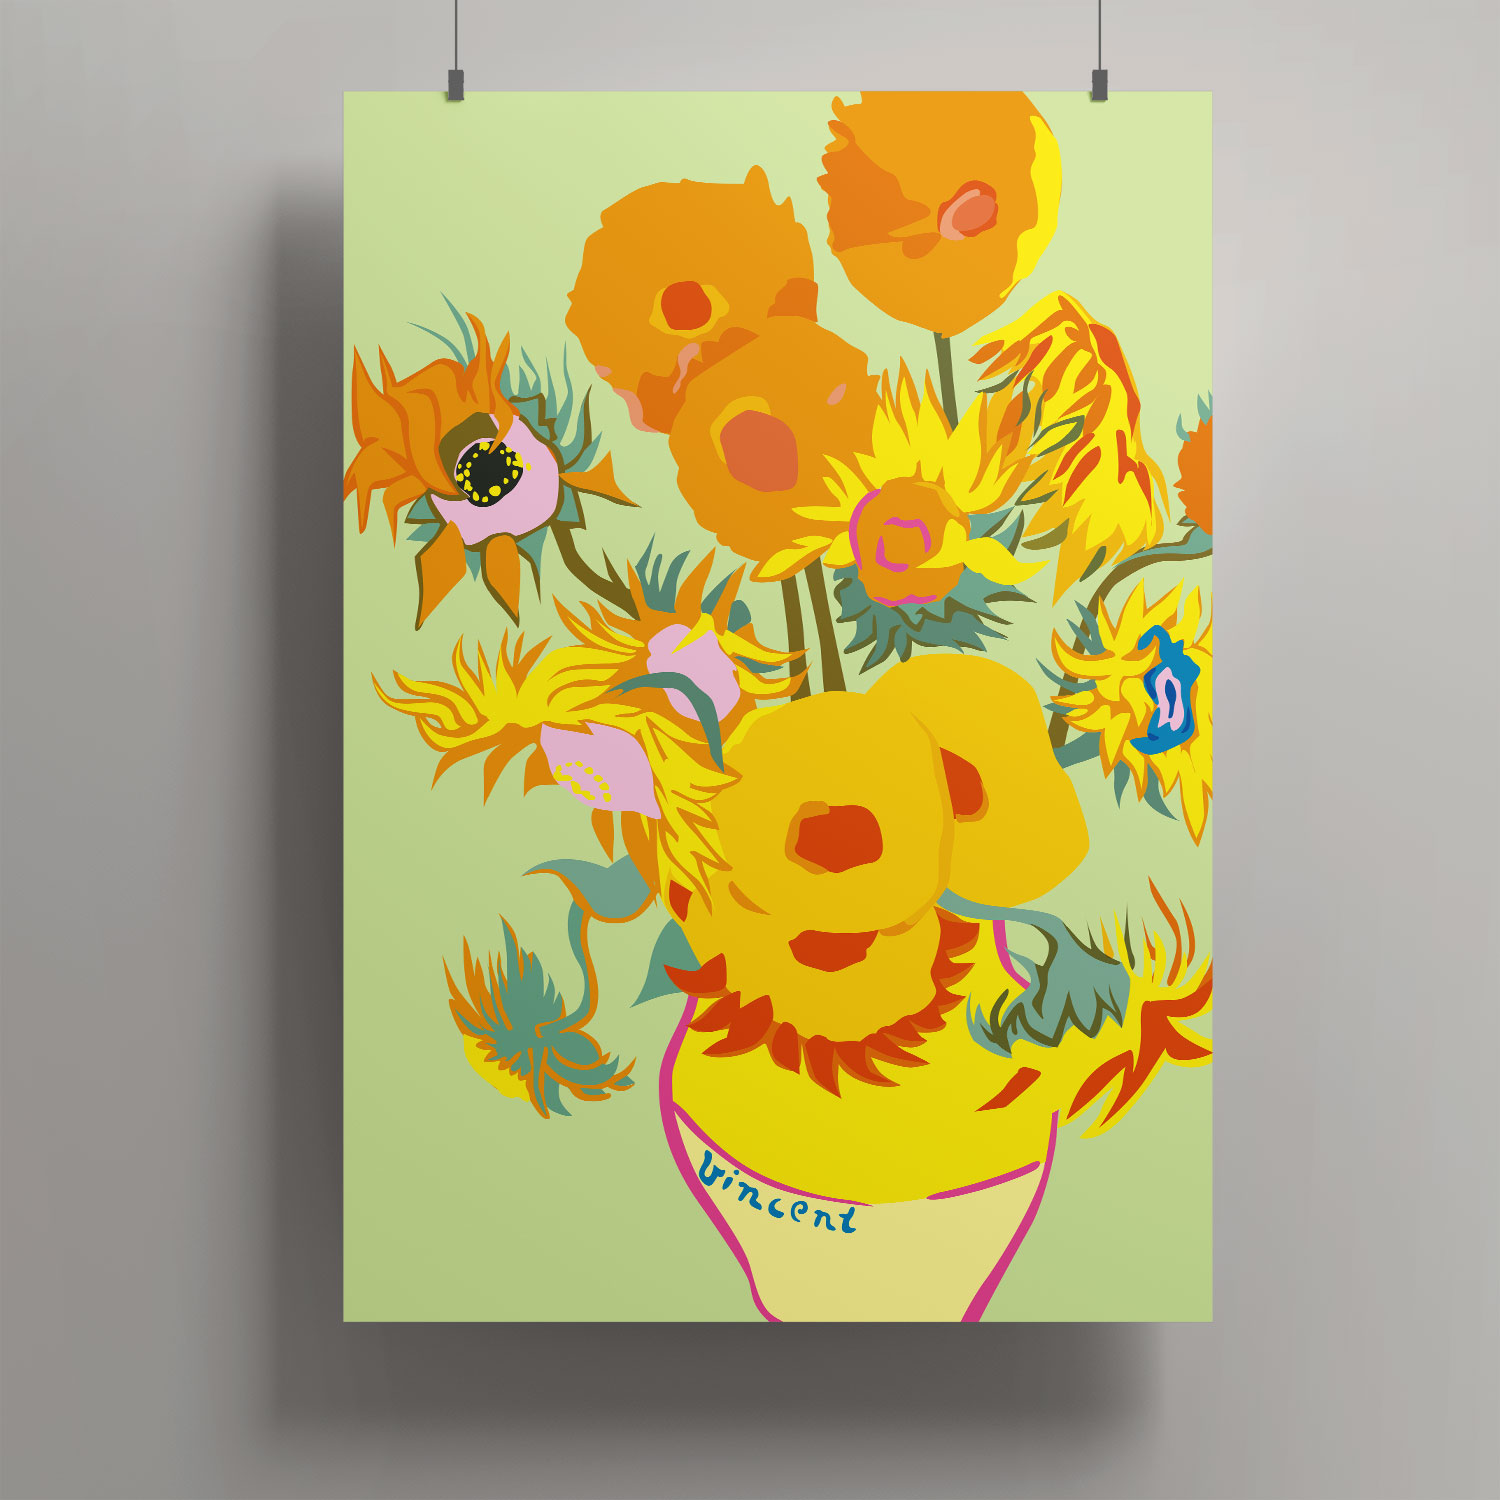 Artprint A3 - Sunflowers' van Gogh